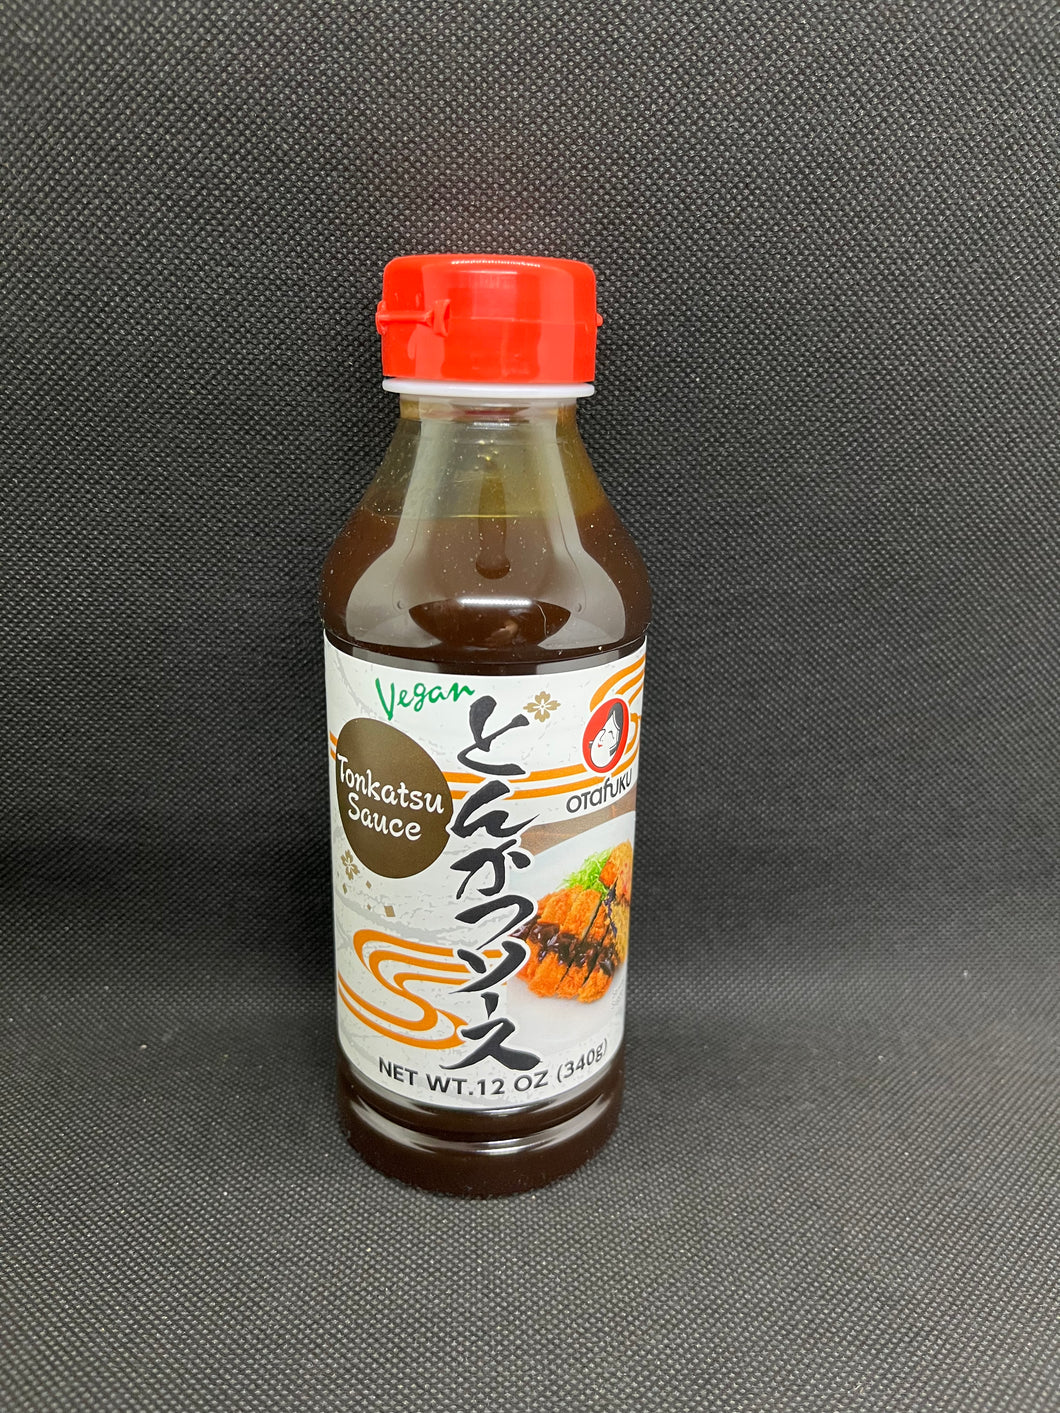 Otafuku Tonkatsu Sauce (340g)